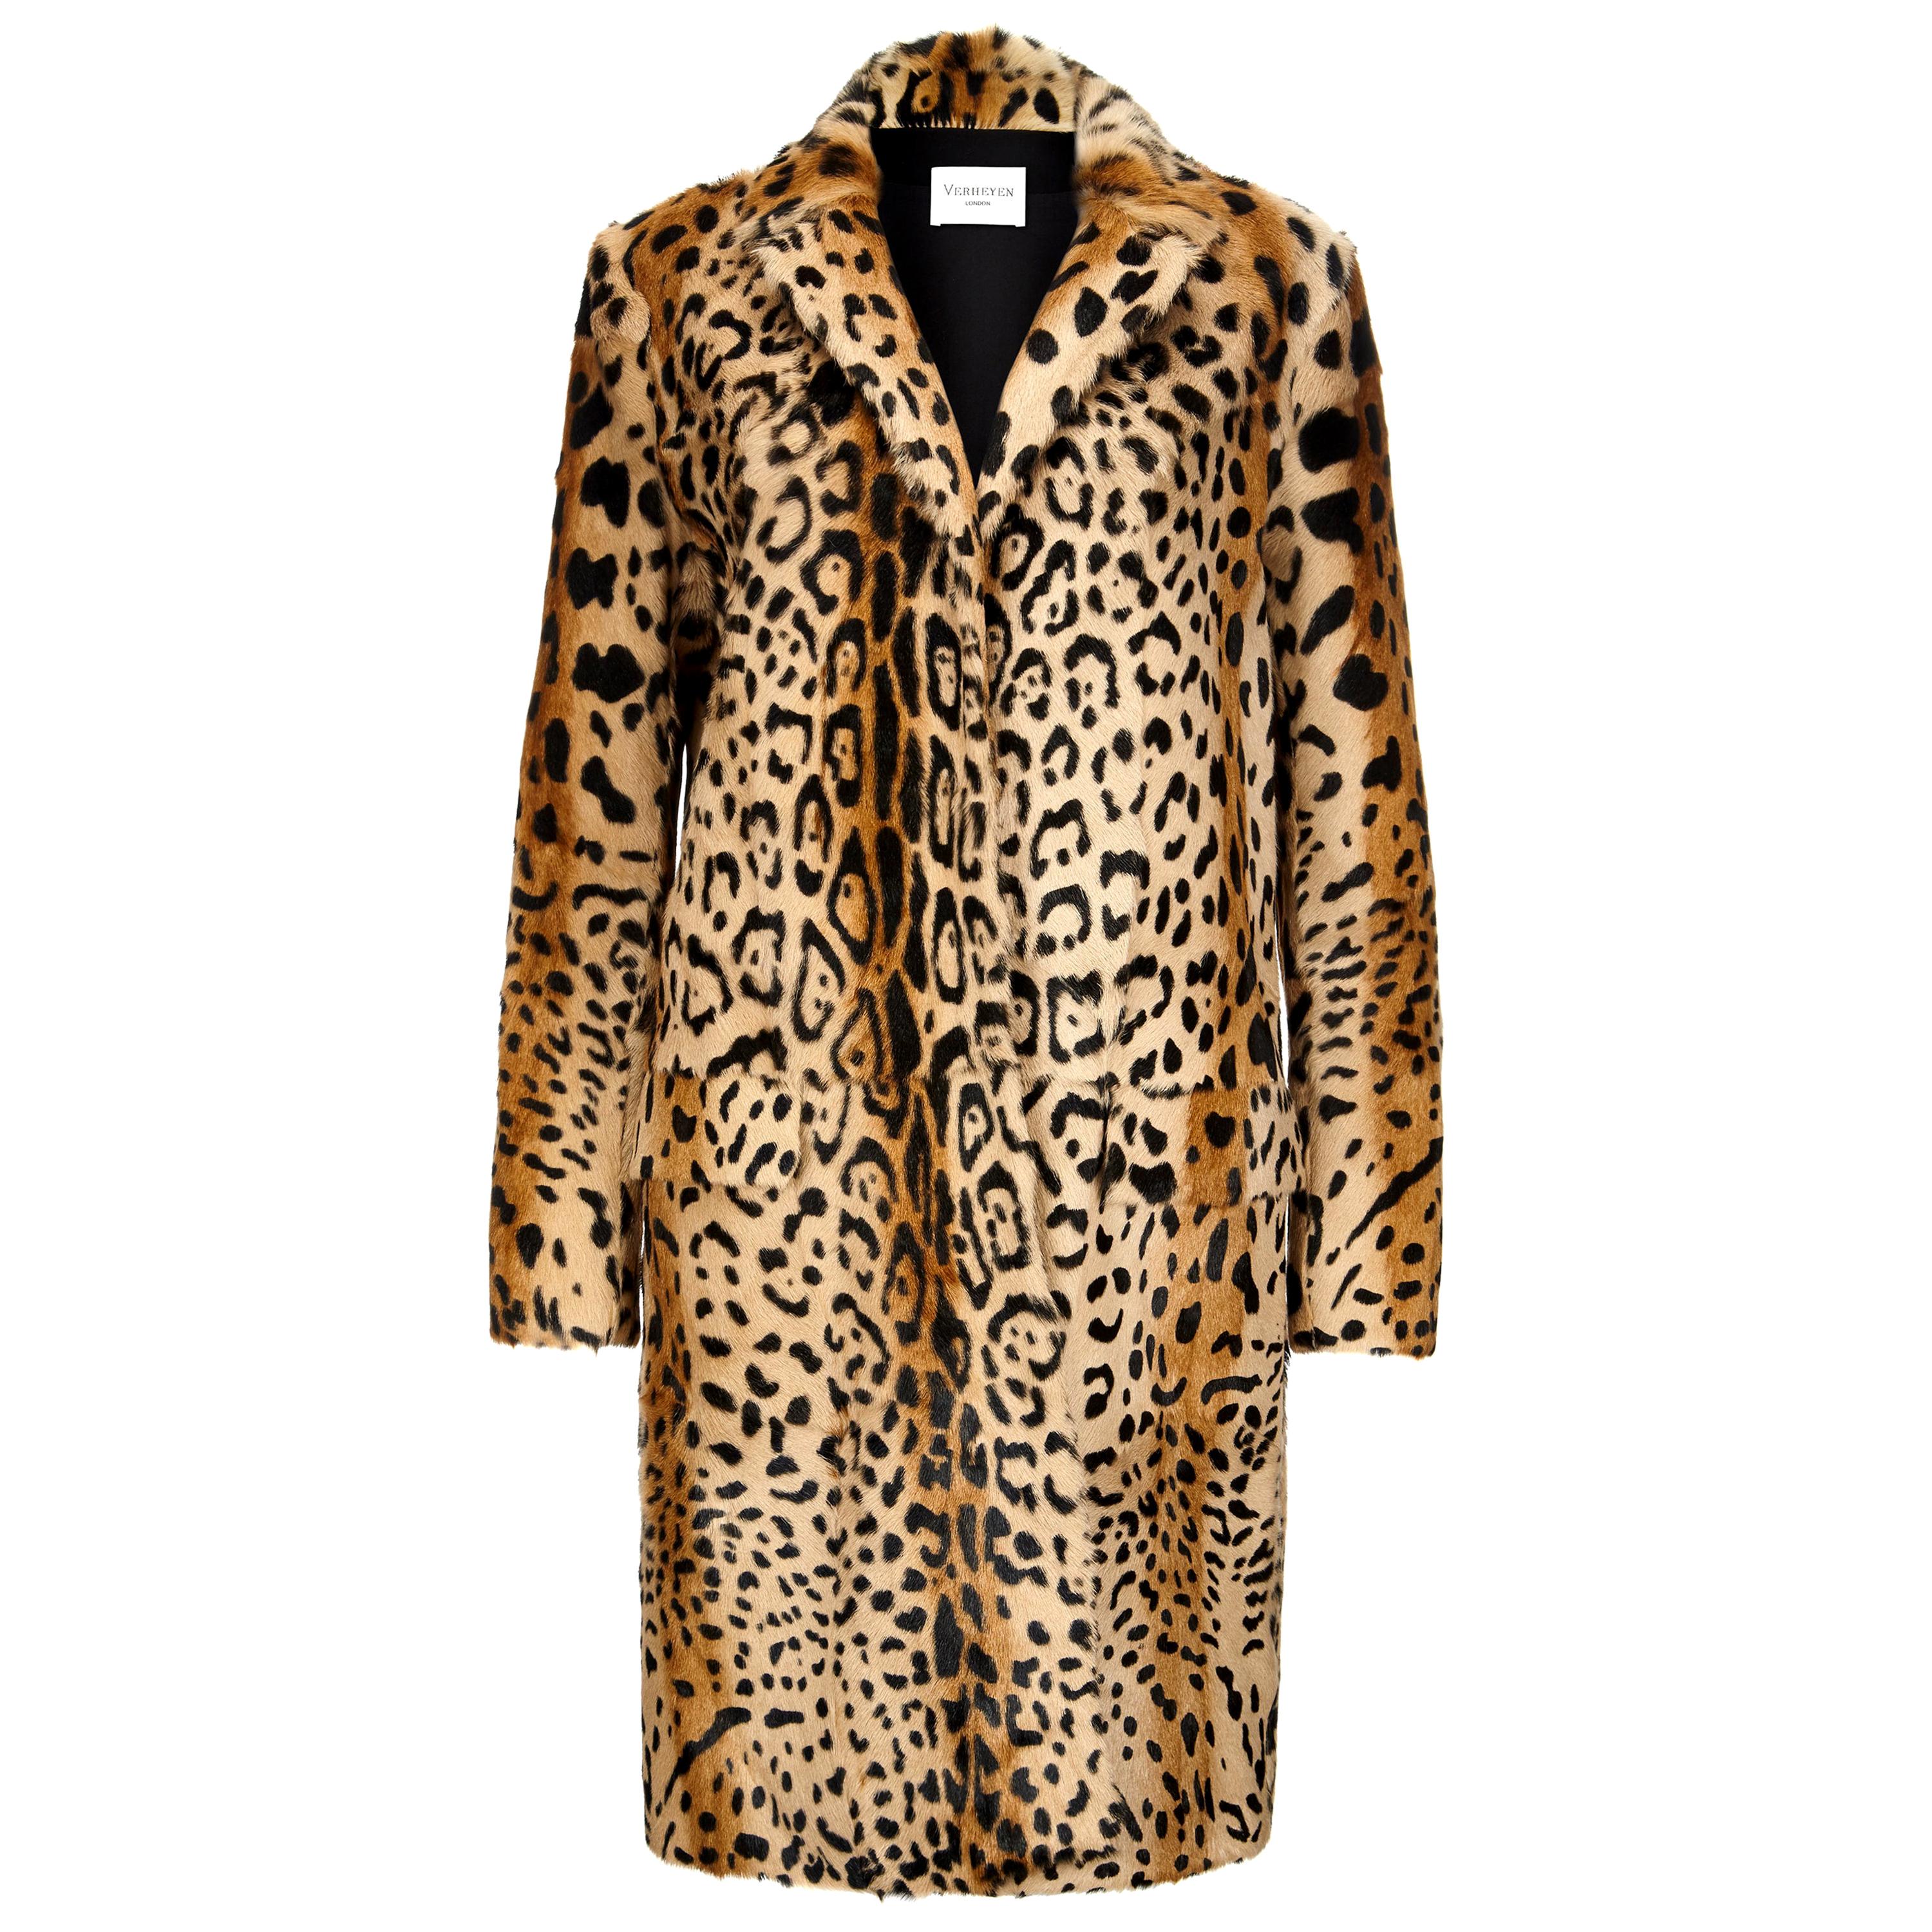 Verheyen London Leopard Print Coat in Natural Goat Hair Fur UK 10 - Brand New 